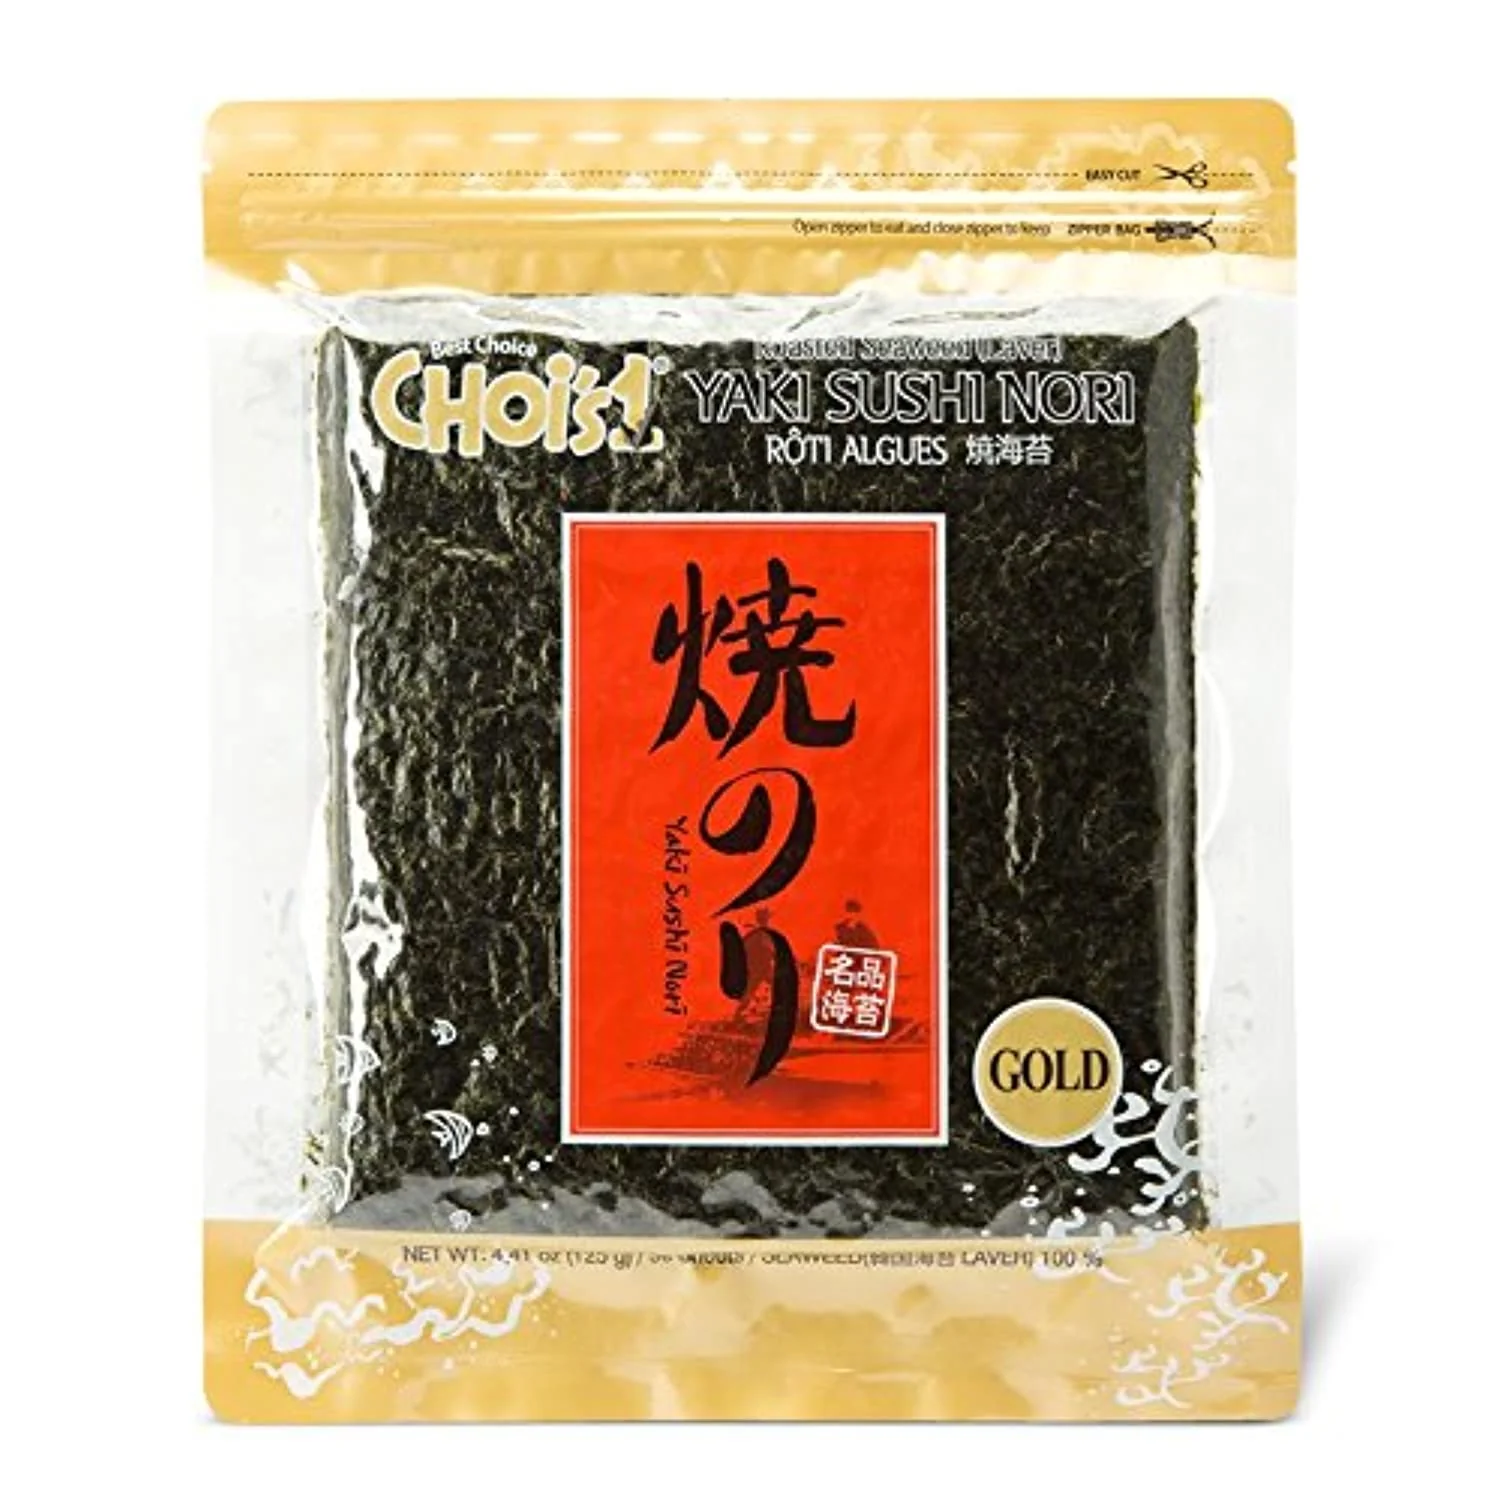 [DCN001] DAECHUN Sushi Nori Seaweed Gold Grade 50 Sheets